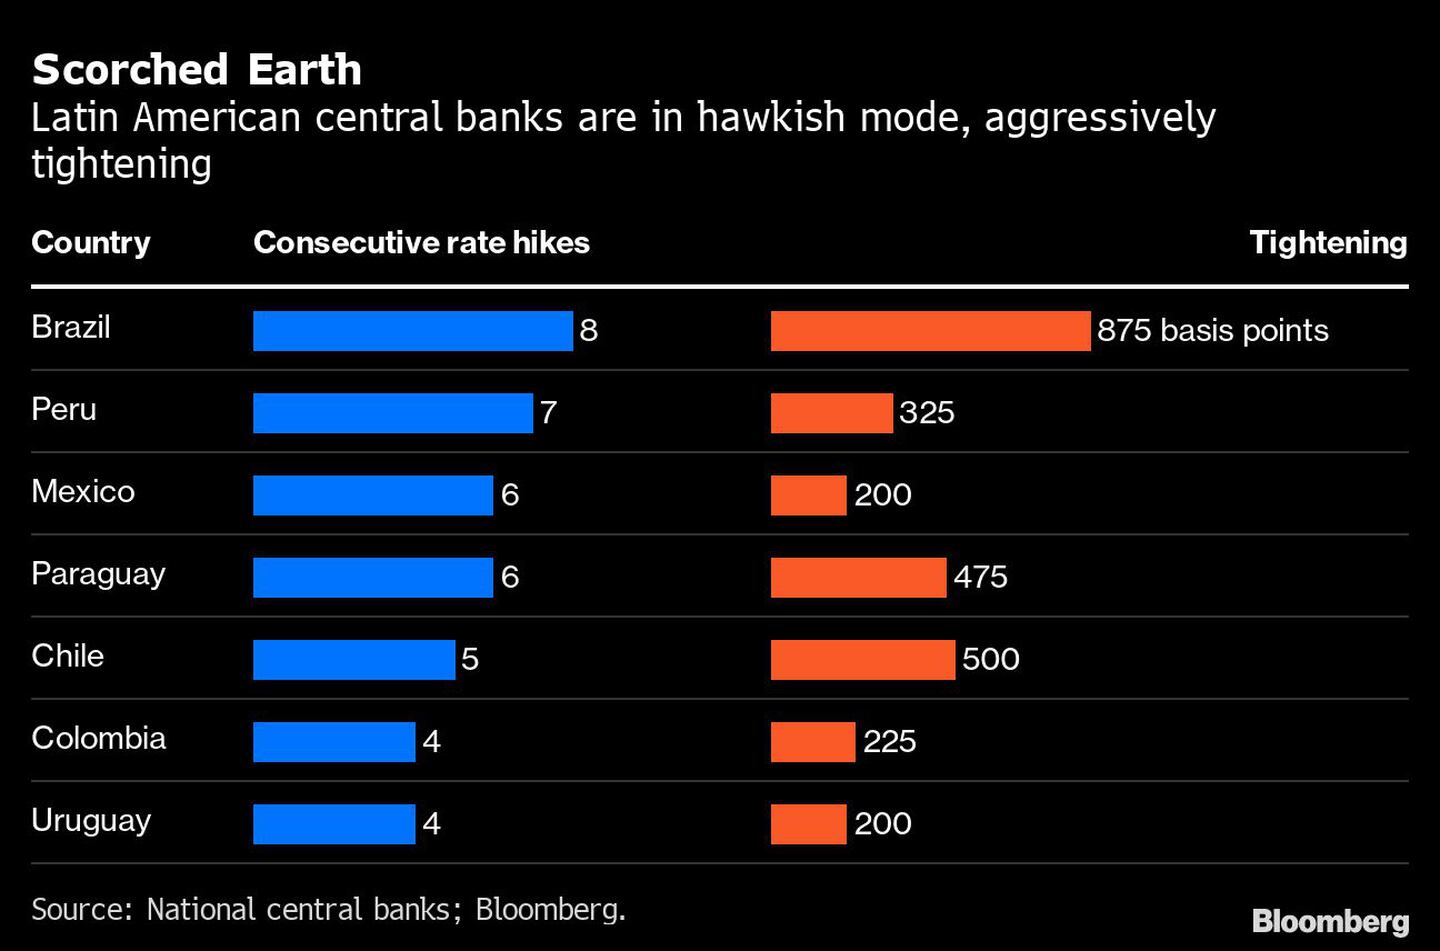 Los bancos centrales de América Latina están en modo "hawkish", subiendo las tasas agresivamentedfd